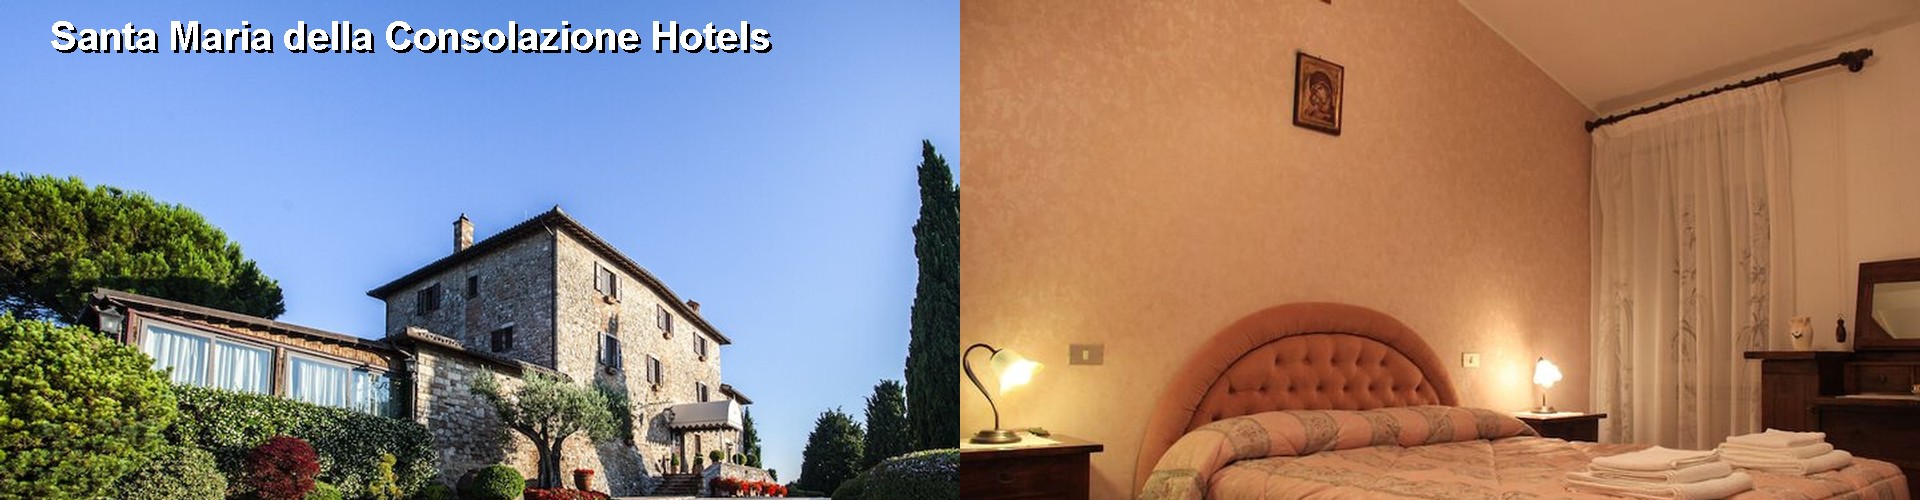 5 Best Hotels near Santa Maria della Consolazione